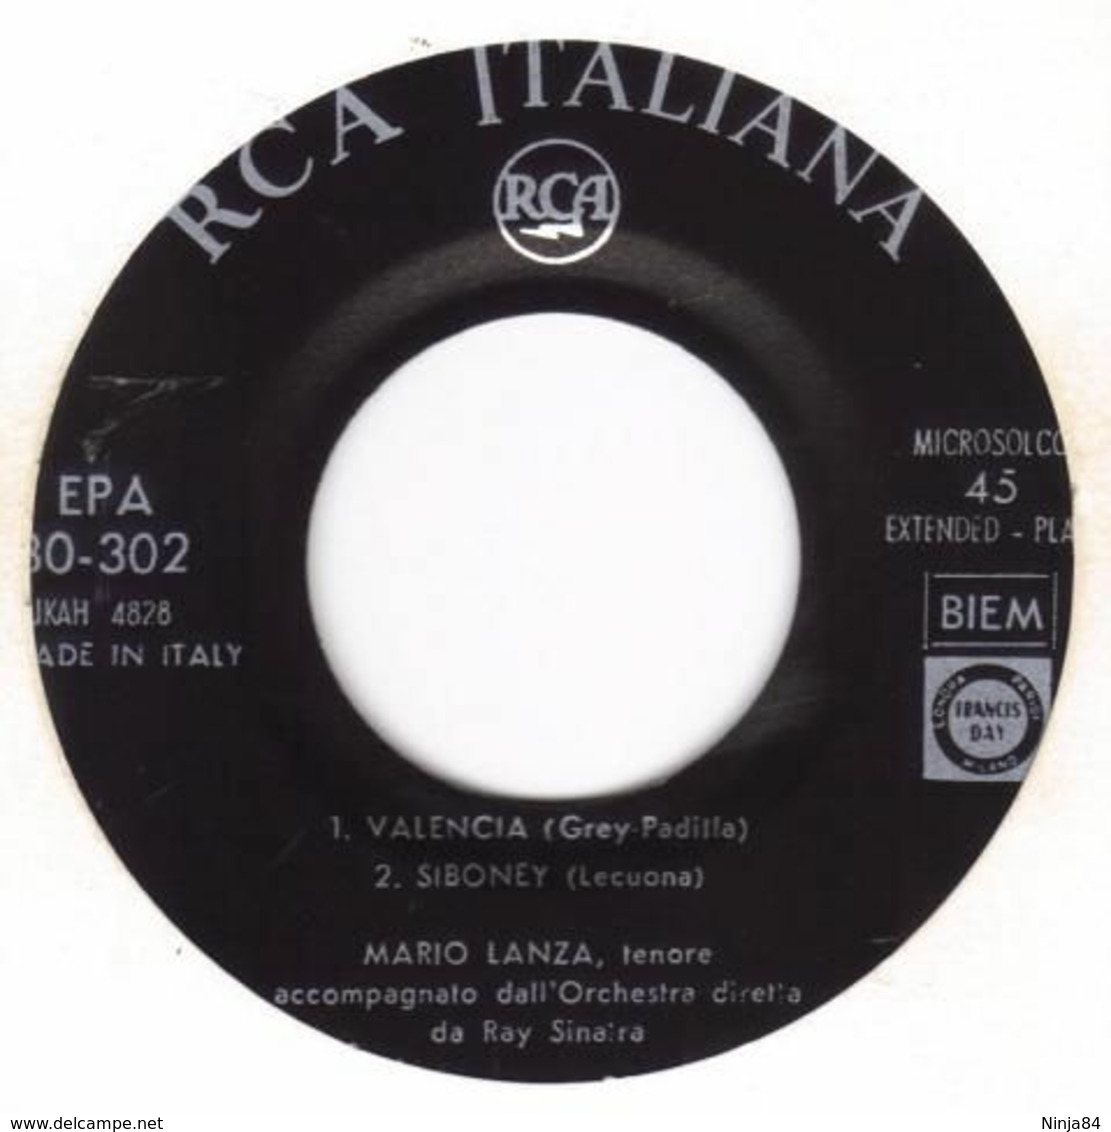 EP 45 RPM (7")  Mario Lanza  "  Valencia  "  Italie - Klassik